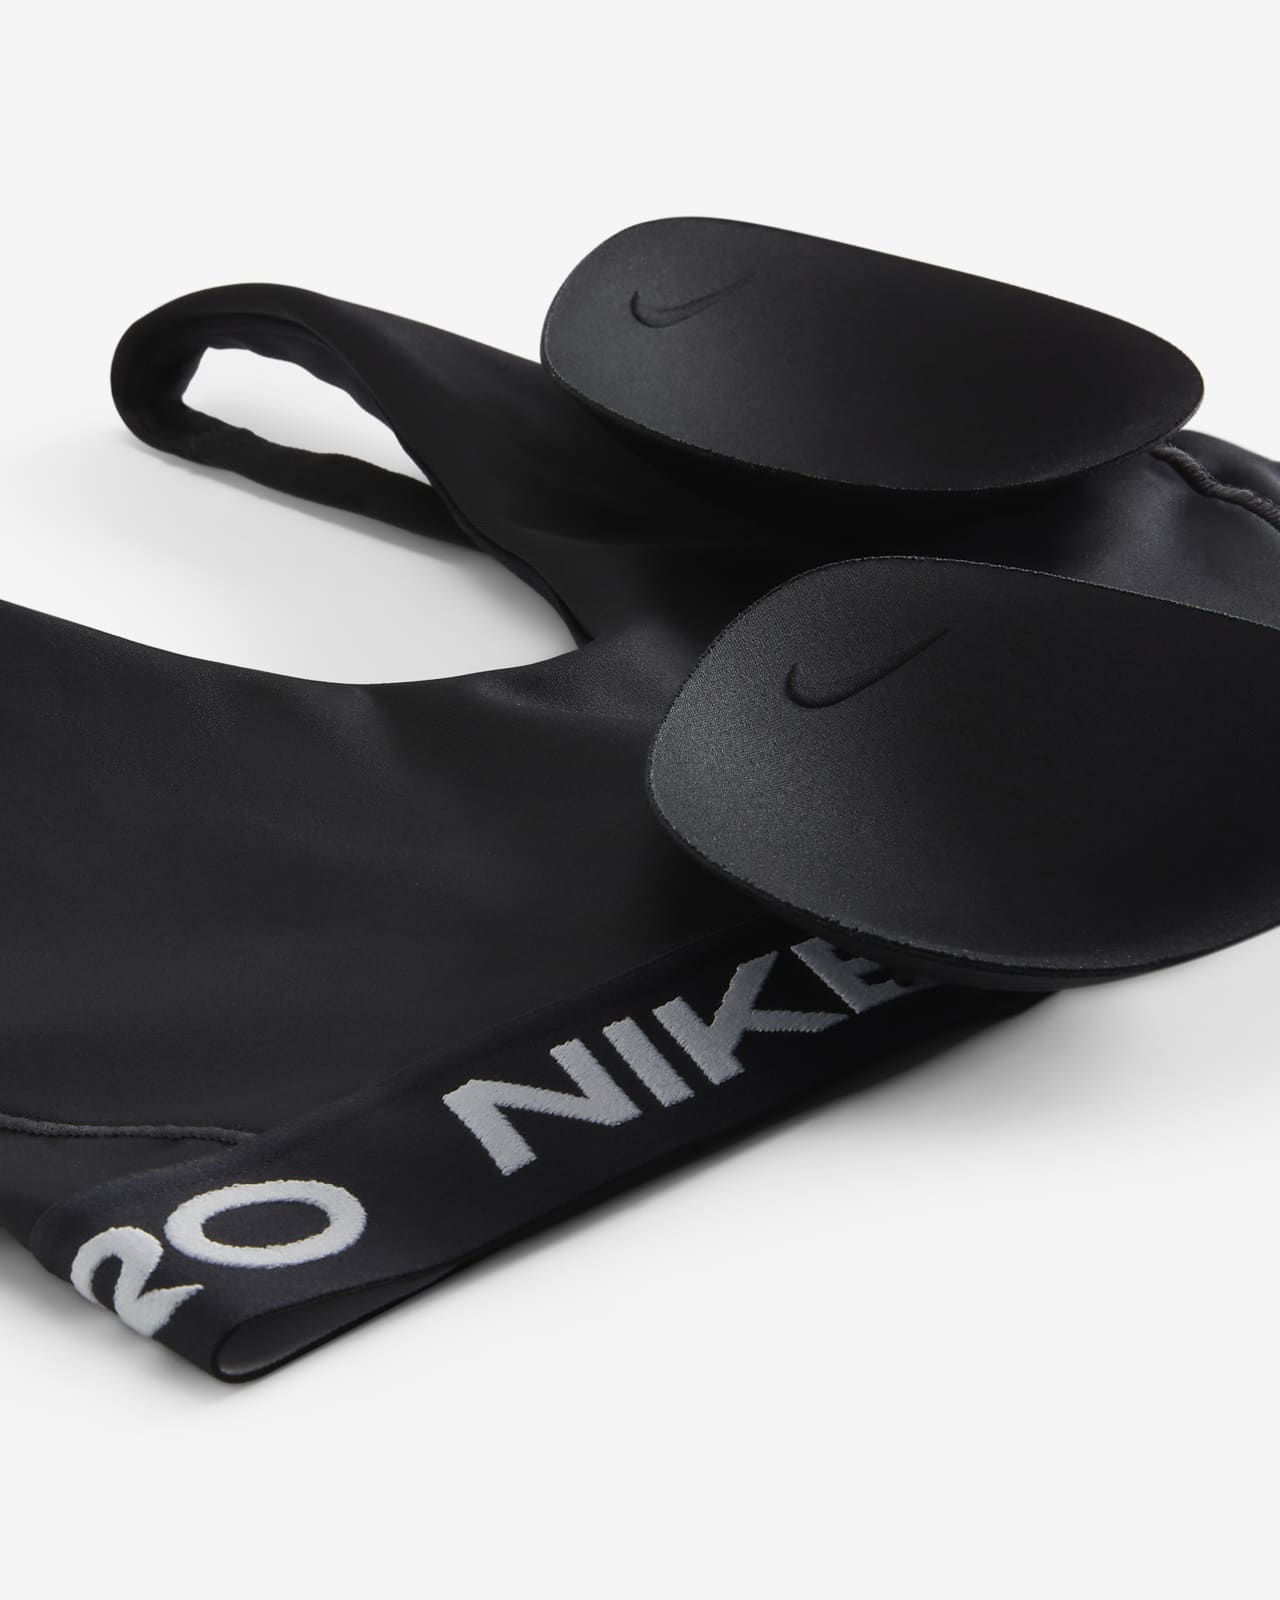 Nike - Pro Indy - Brassière à bretelles - Jaune fluo